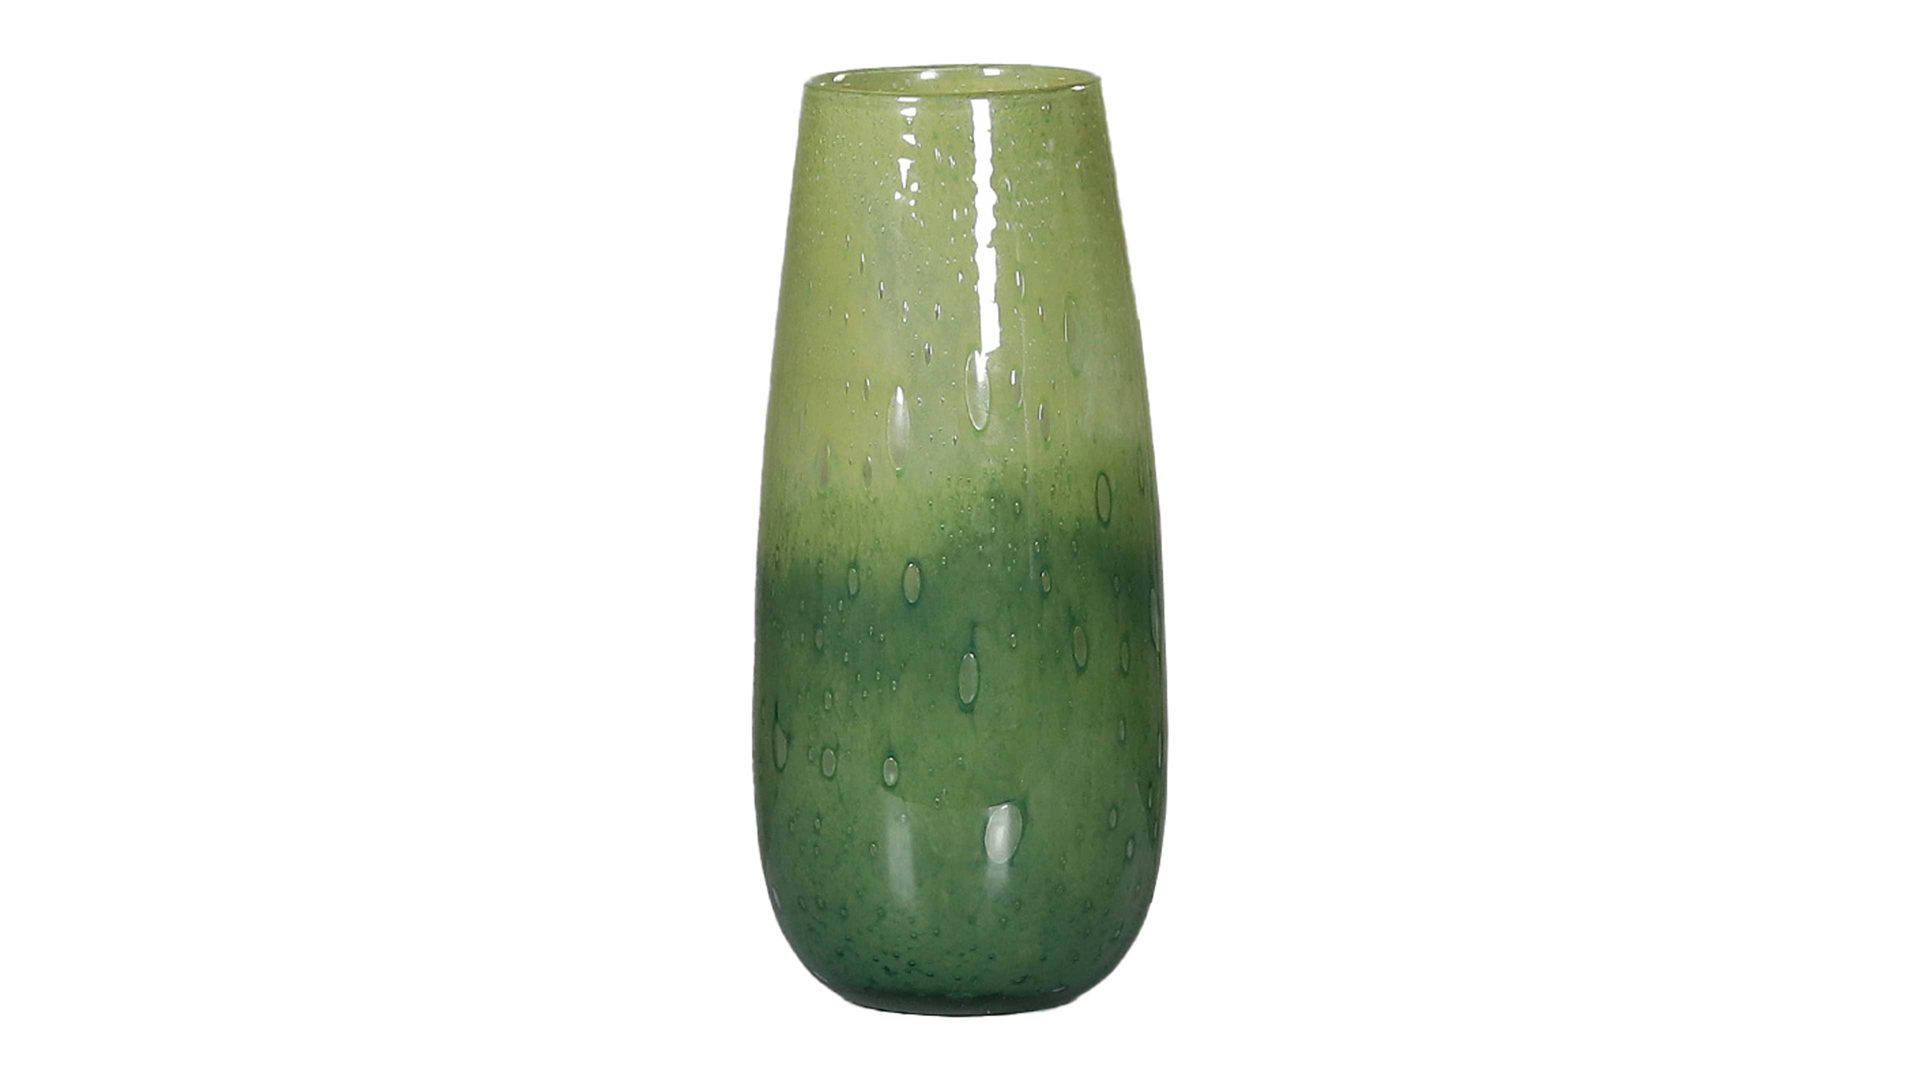 Vase Interliving BEST BUDDYS! aus Glas in Grün Interliving BEST BUDDYS! Blumenvase grünes Glas - Höhe ca. 27 cm